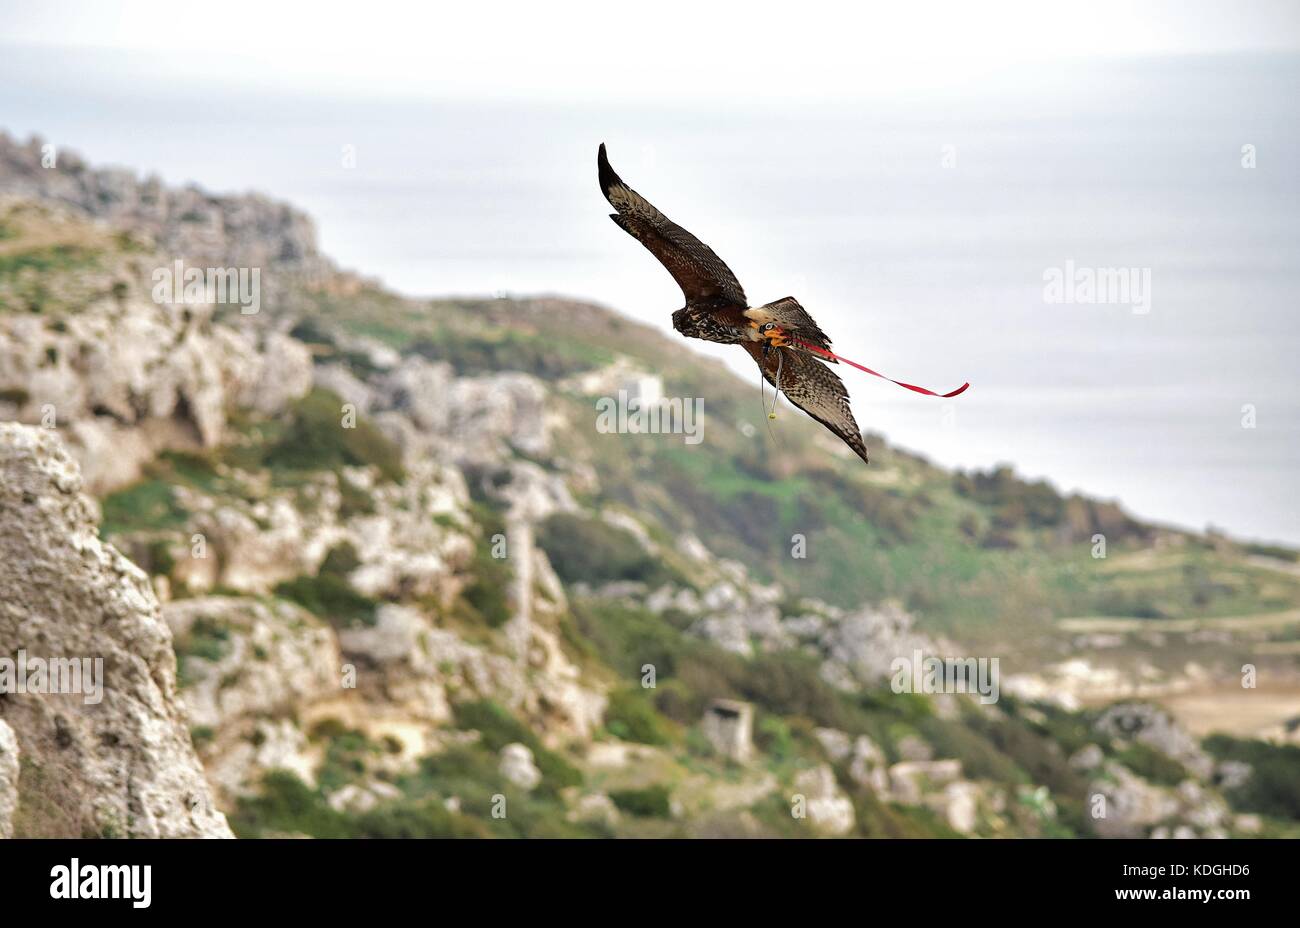 Un captive harris hawk, utilizzato in falconeria, prelevato dal suo falconer per un volo di formazione. Le ali stese, è volare sopra le coste maltesi Foto Stock